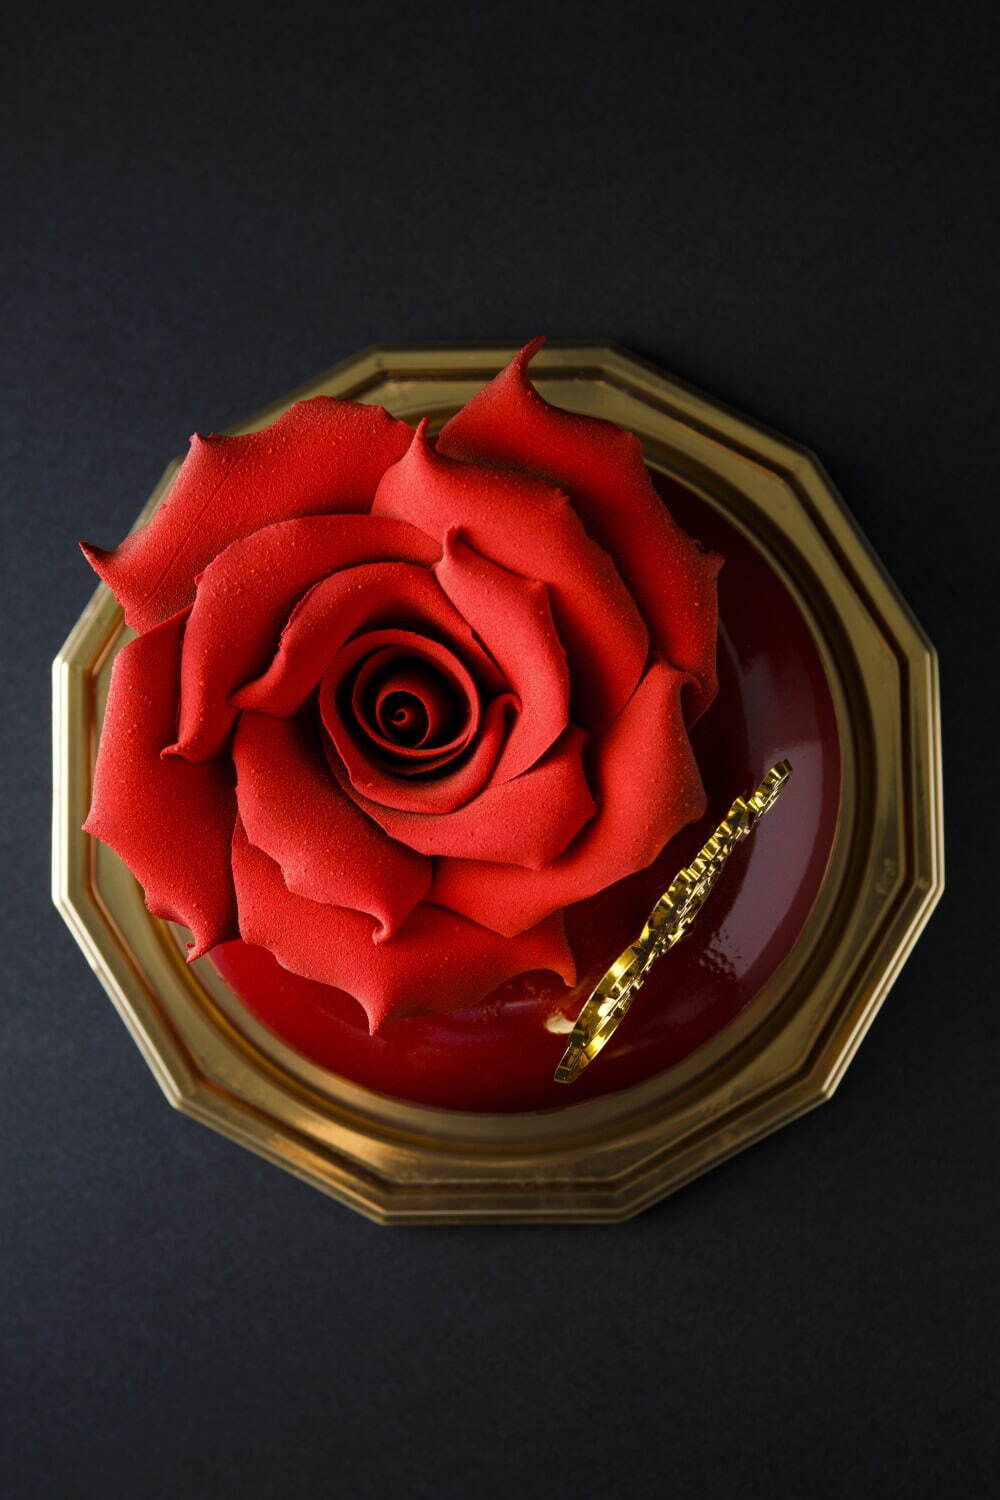 「ノエル・ショコラローズ(Noël Chocolat Rose)」直径12cm×高さ14cm 5,000円